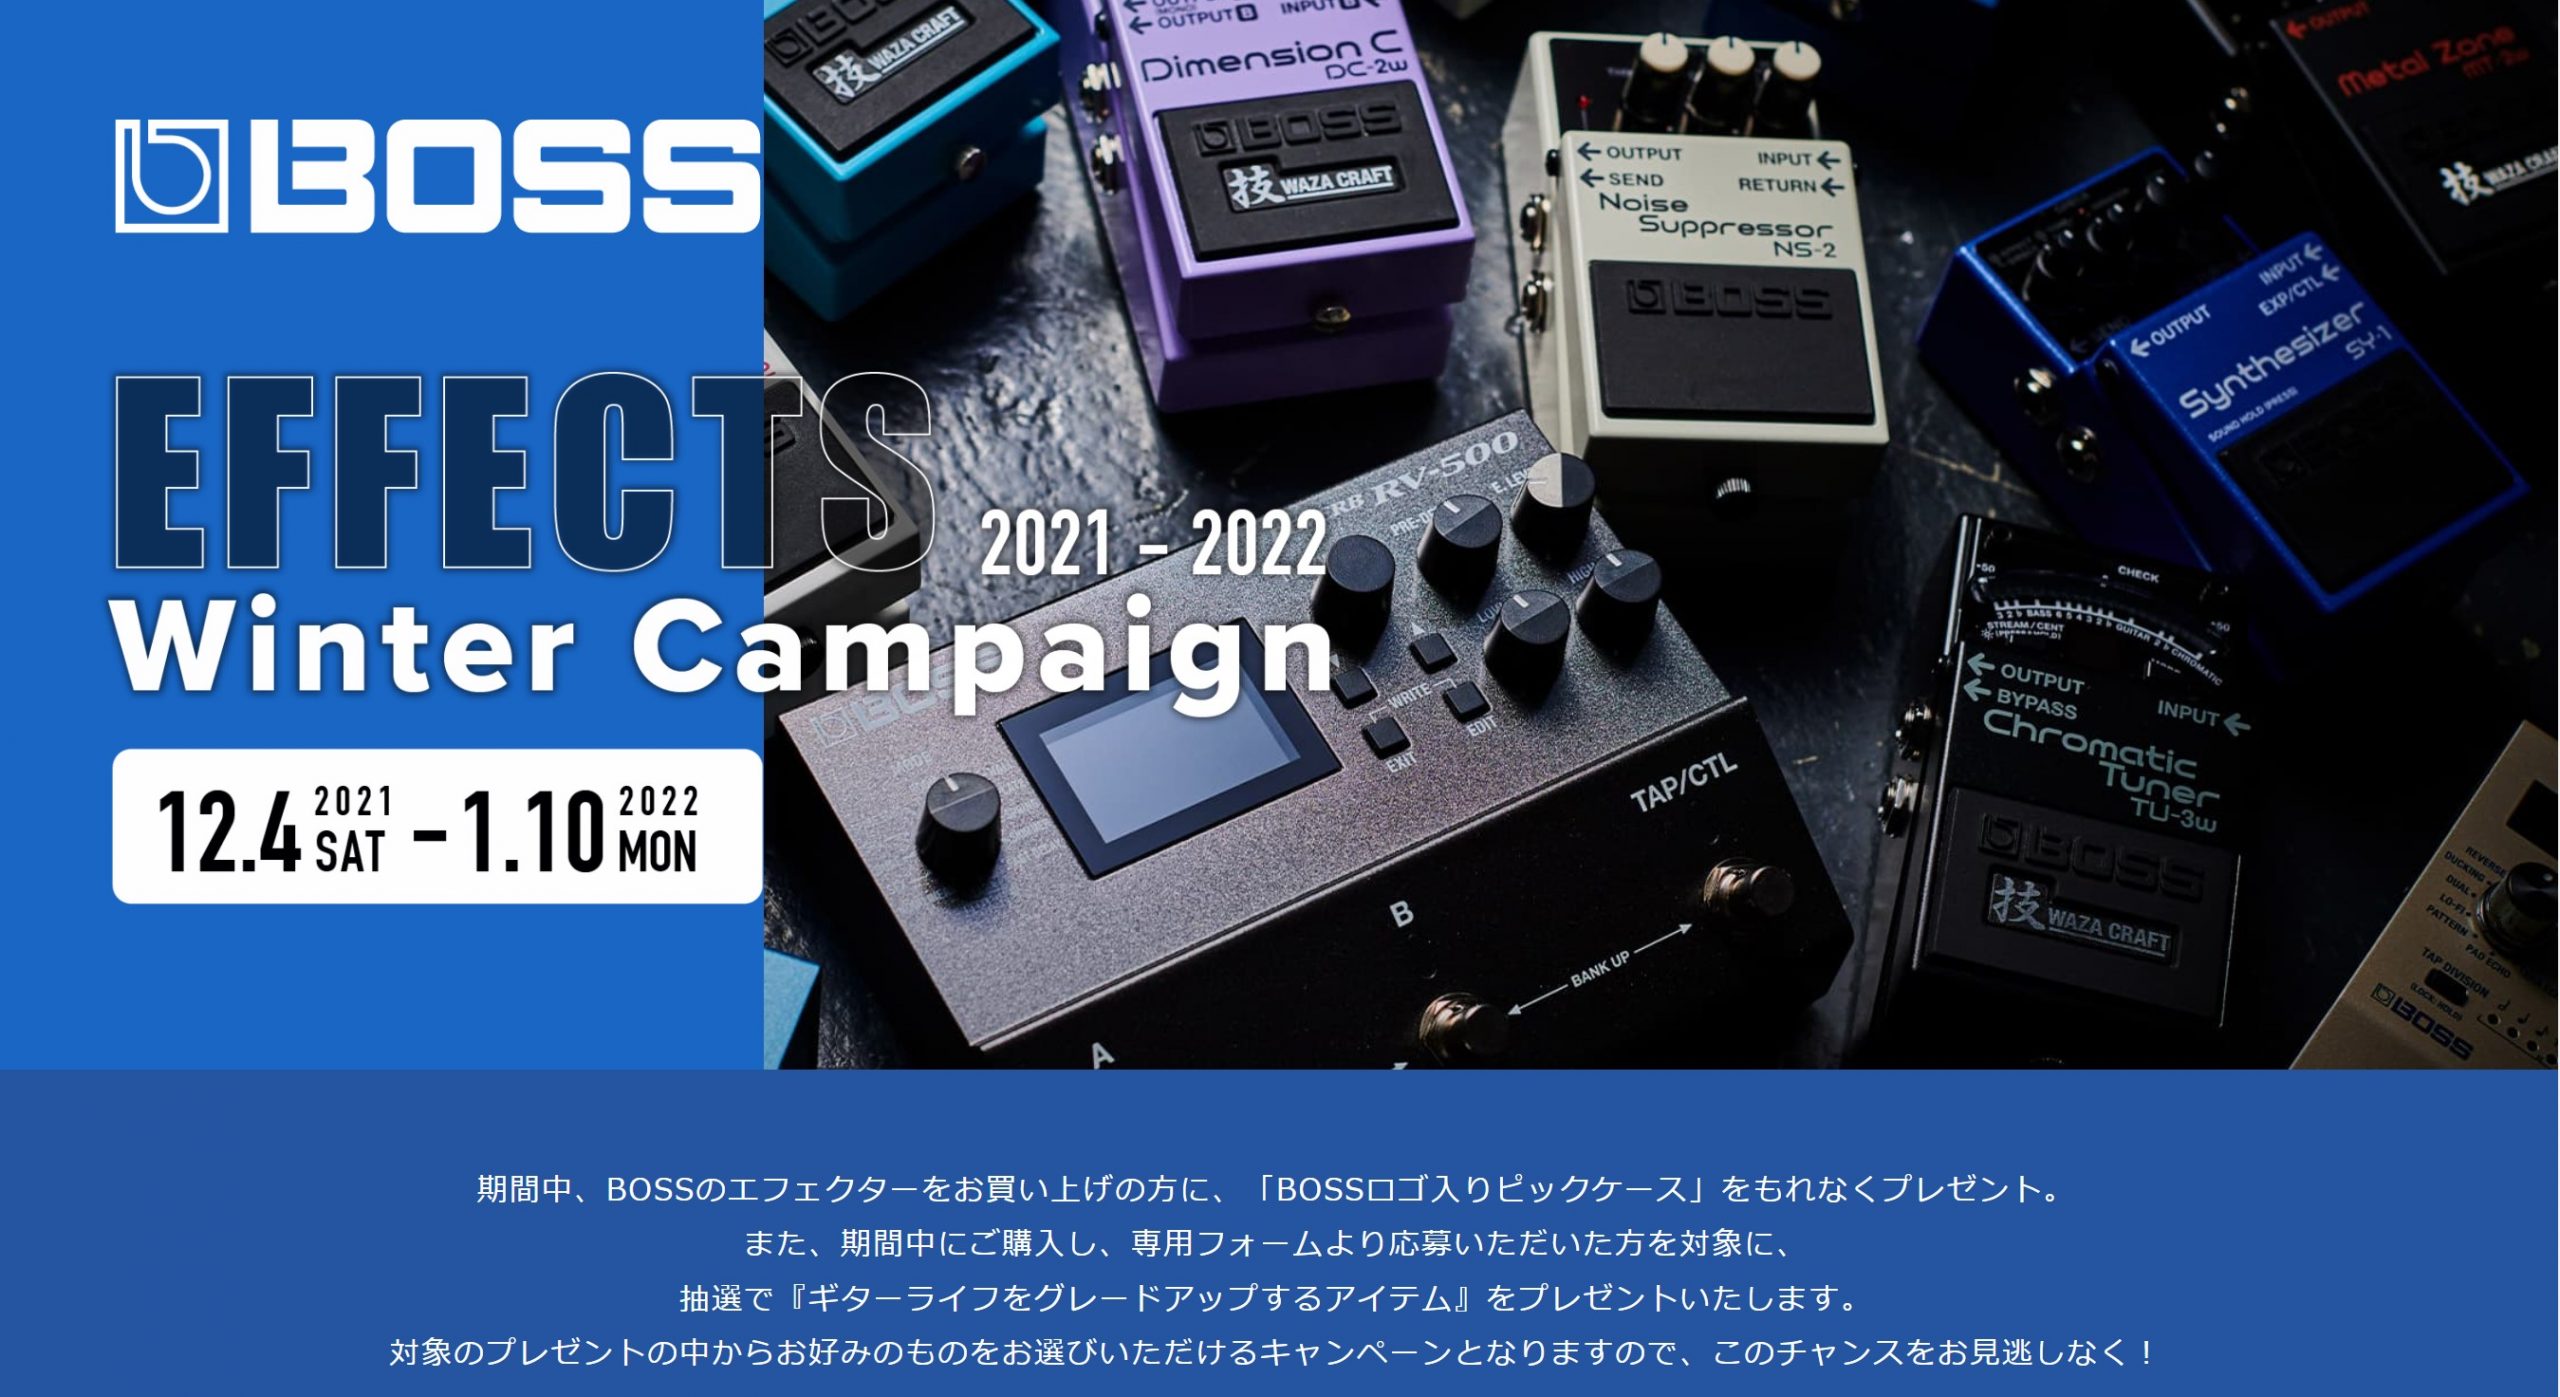 【キャンペーン】BOSS Effects Winter Campaign2021-2022開催中！